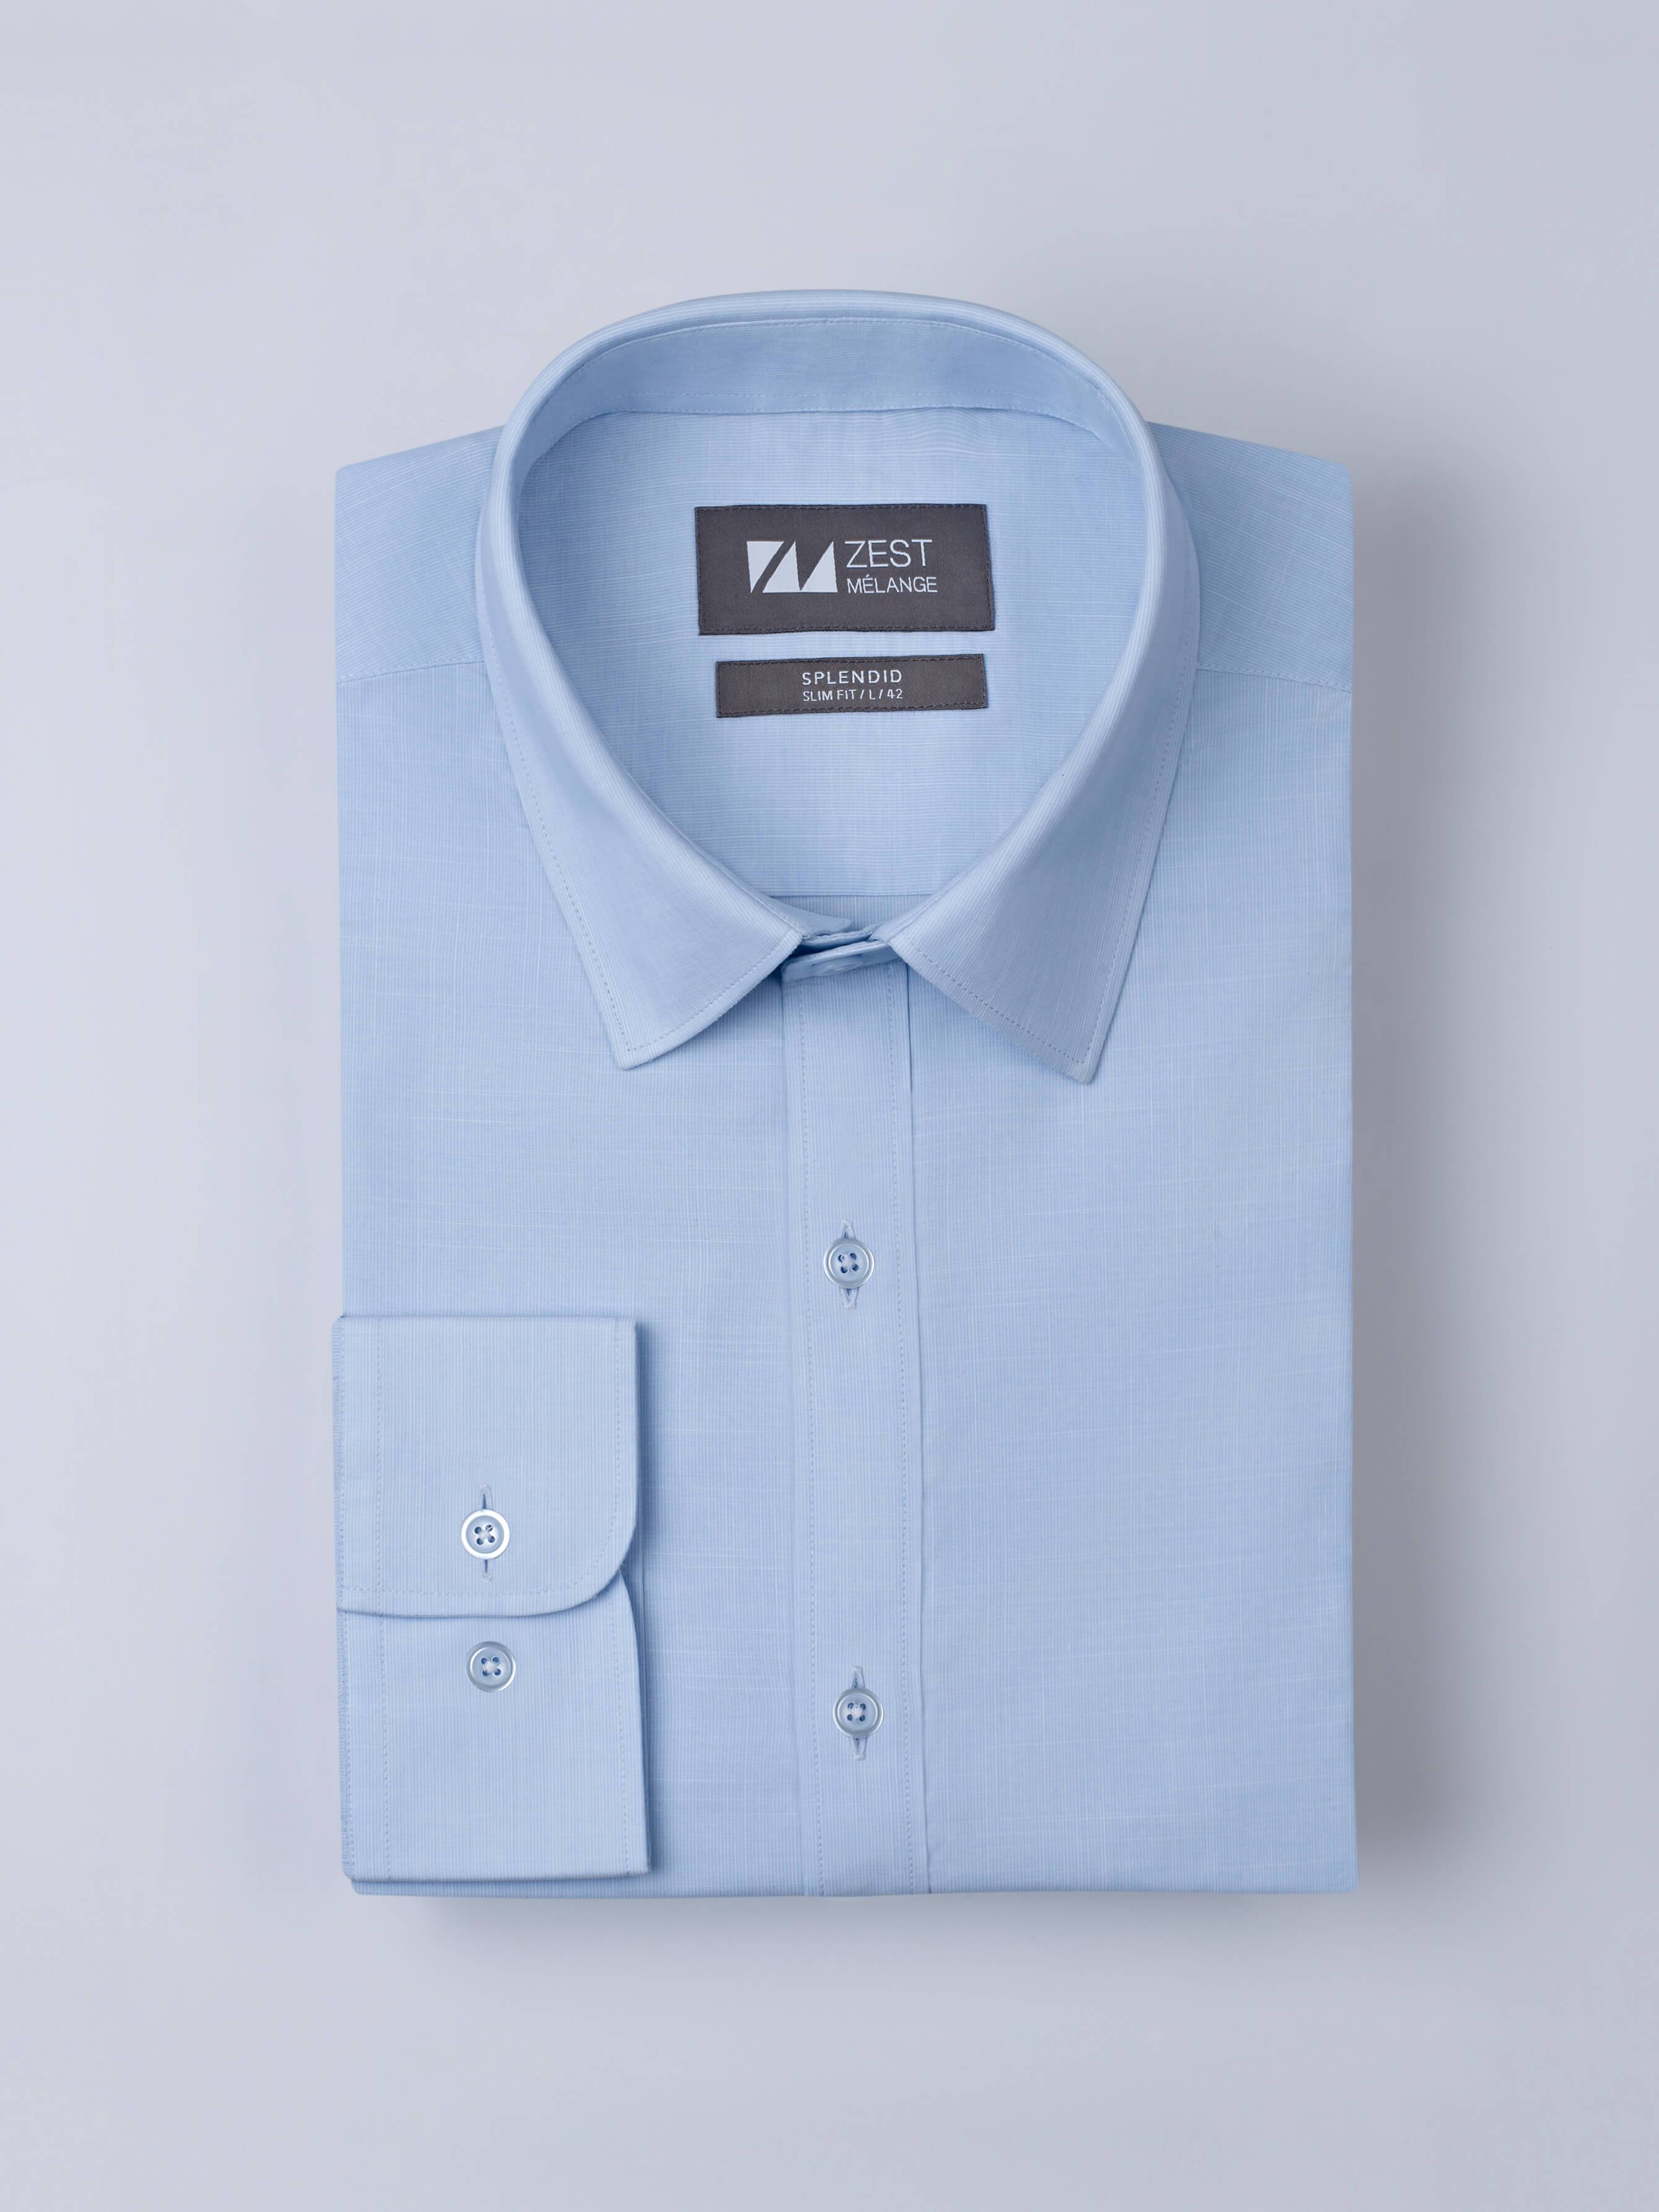 Detachable Collar Shirt - Zest Mélange 